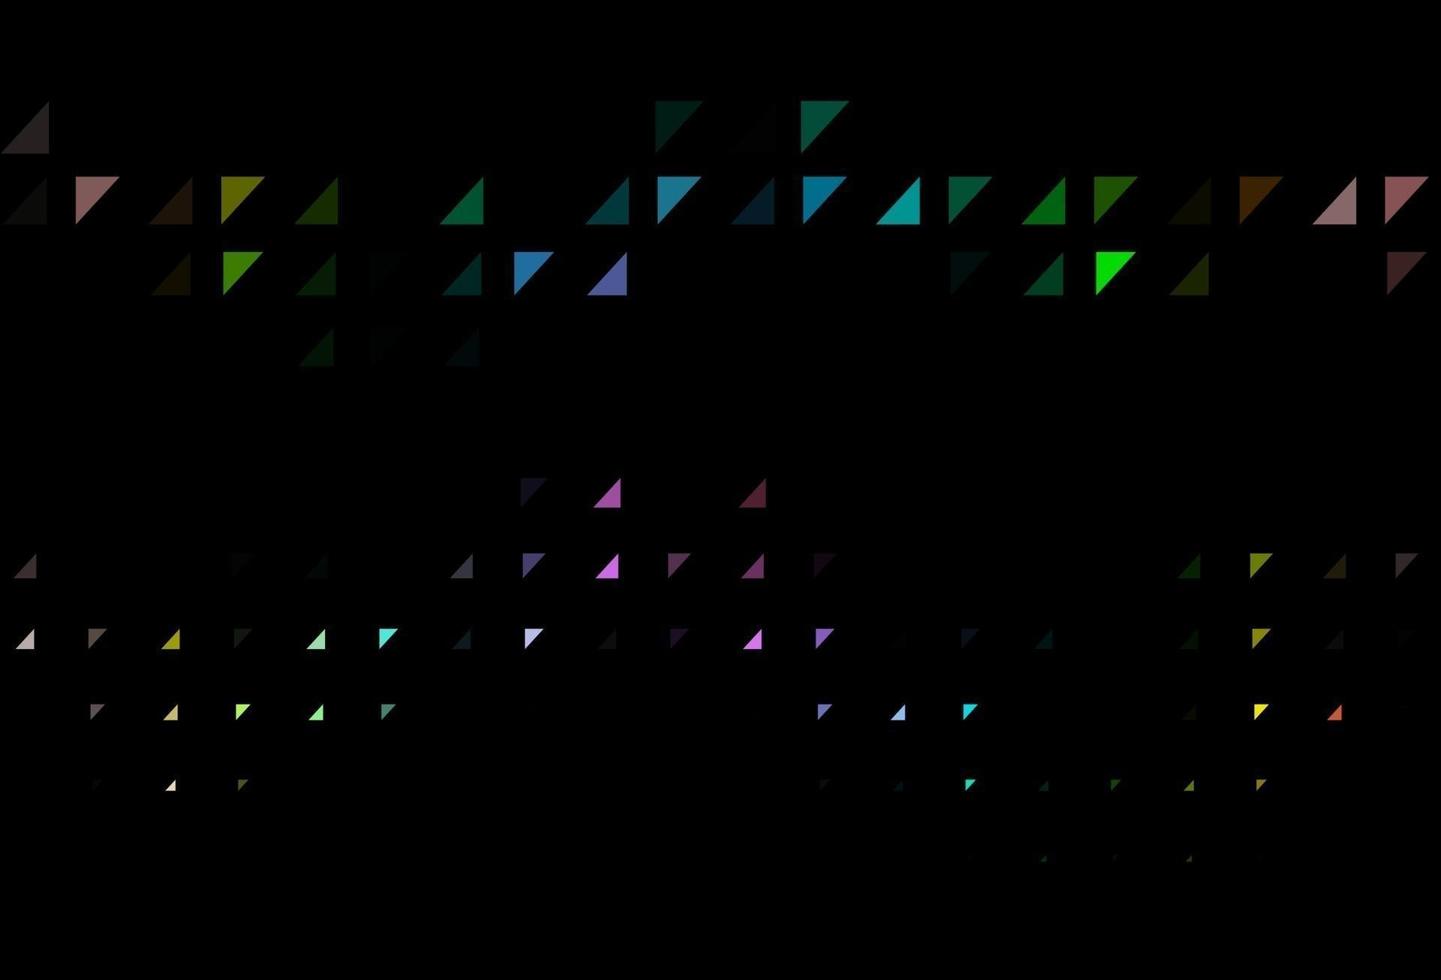 multicolore scuro, layout vettoriale arcobaleno con forme circolari.